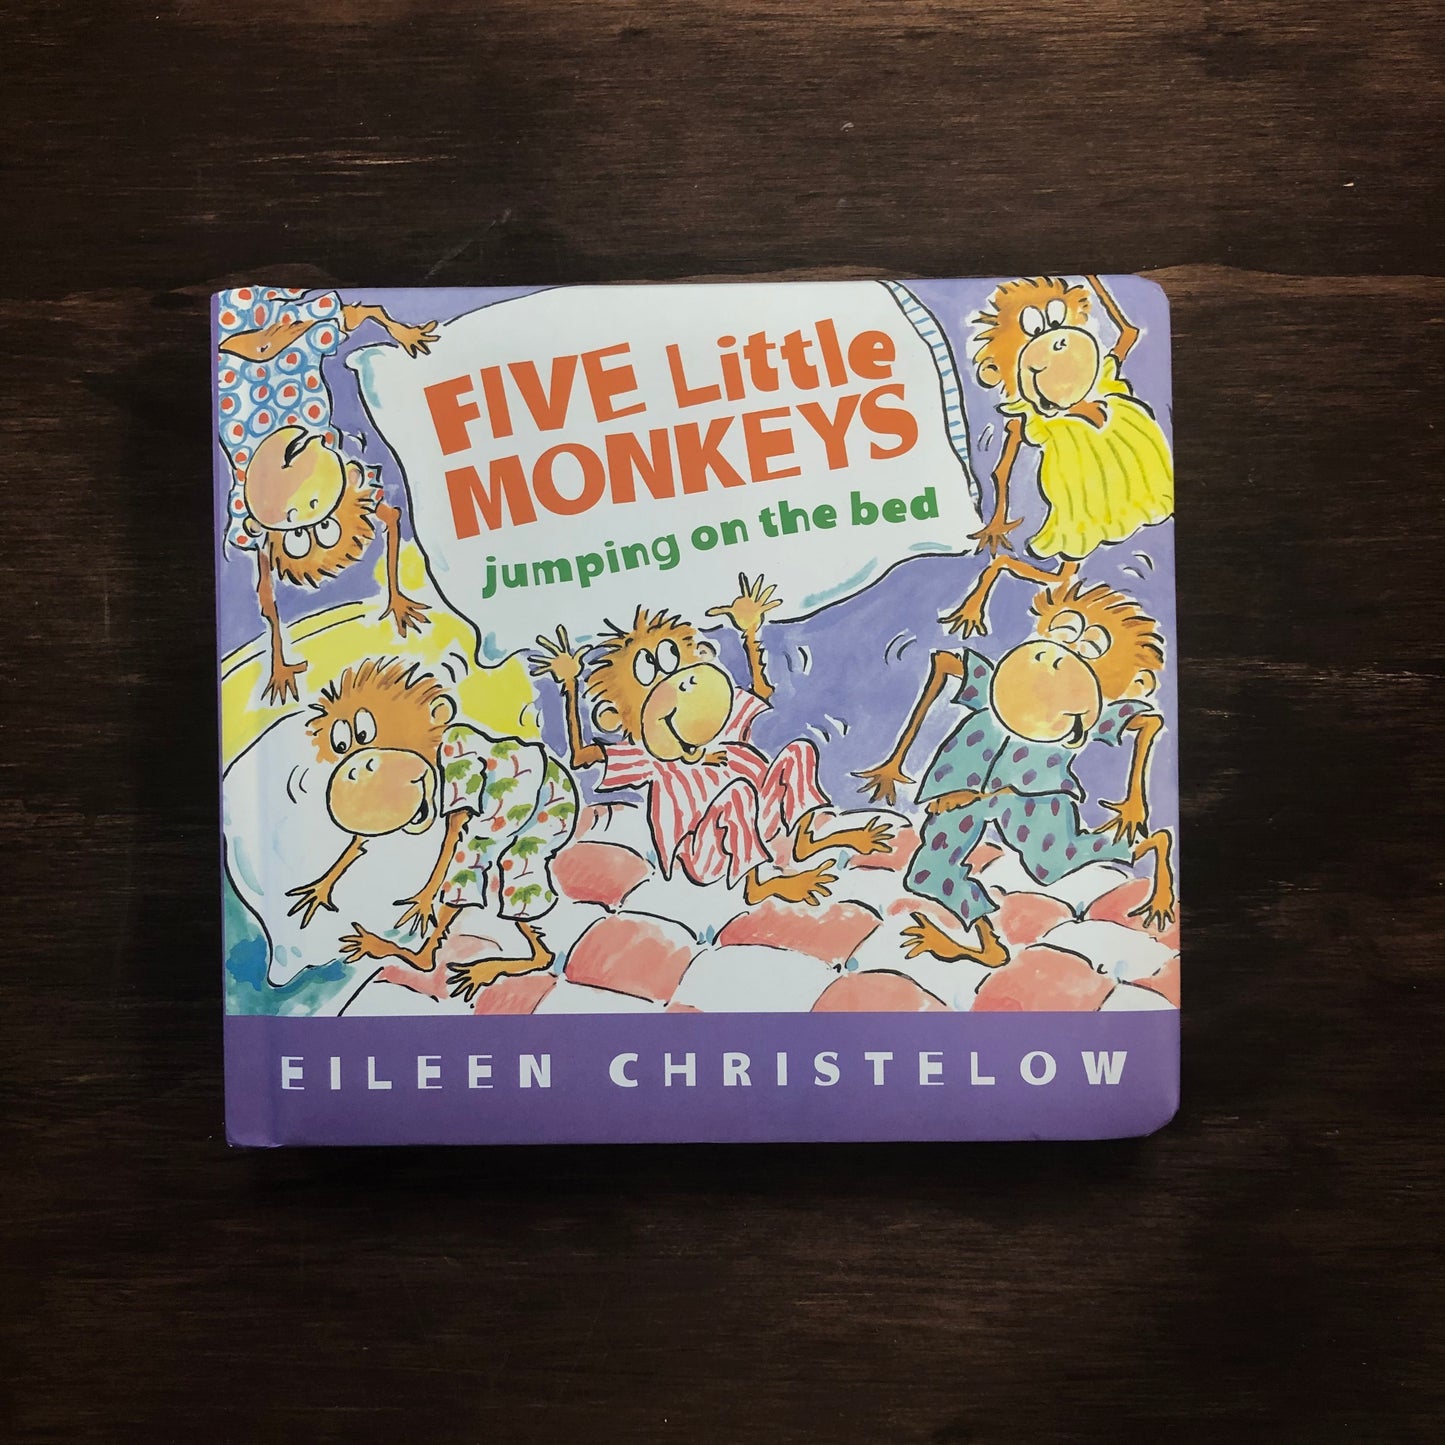 Five Little Monkey's